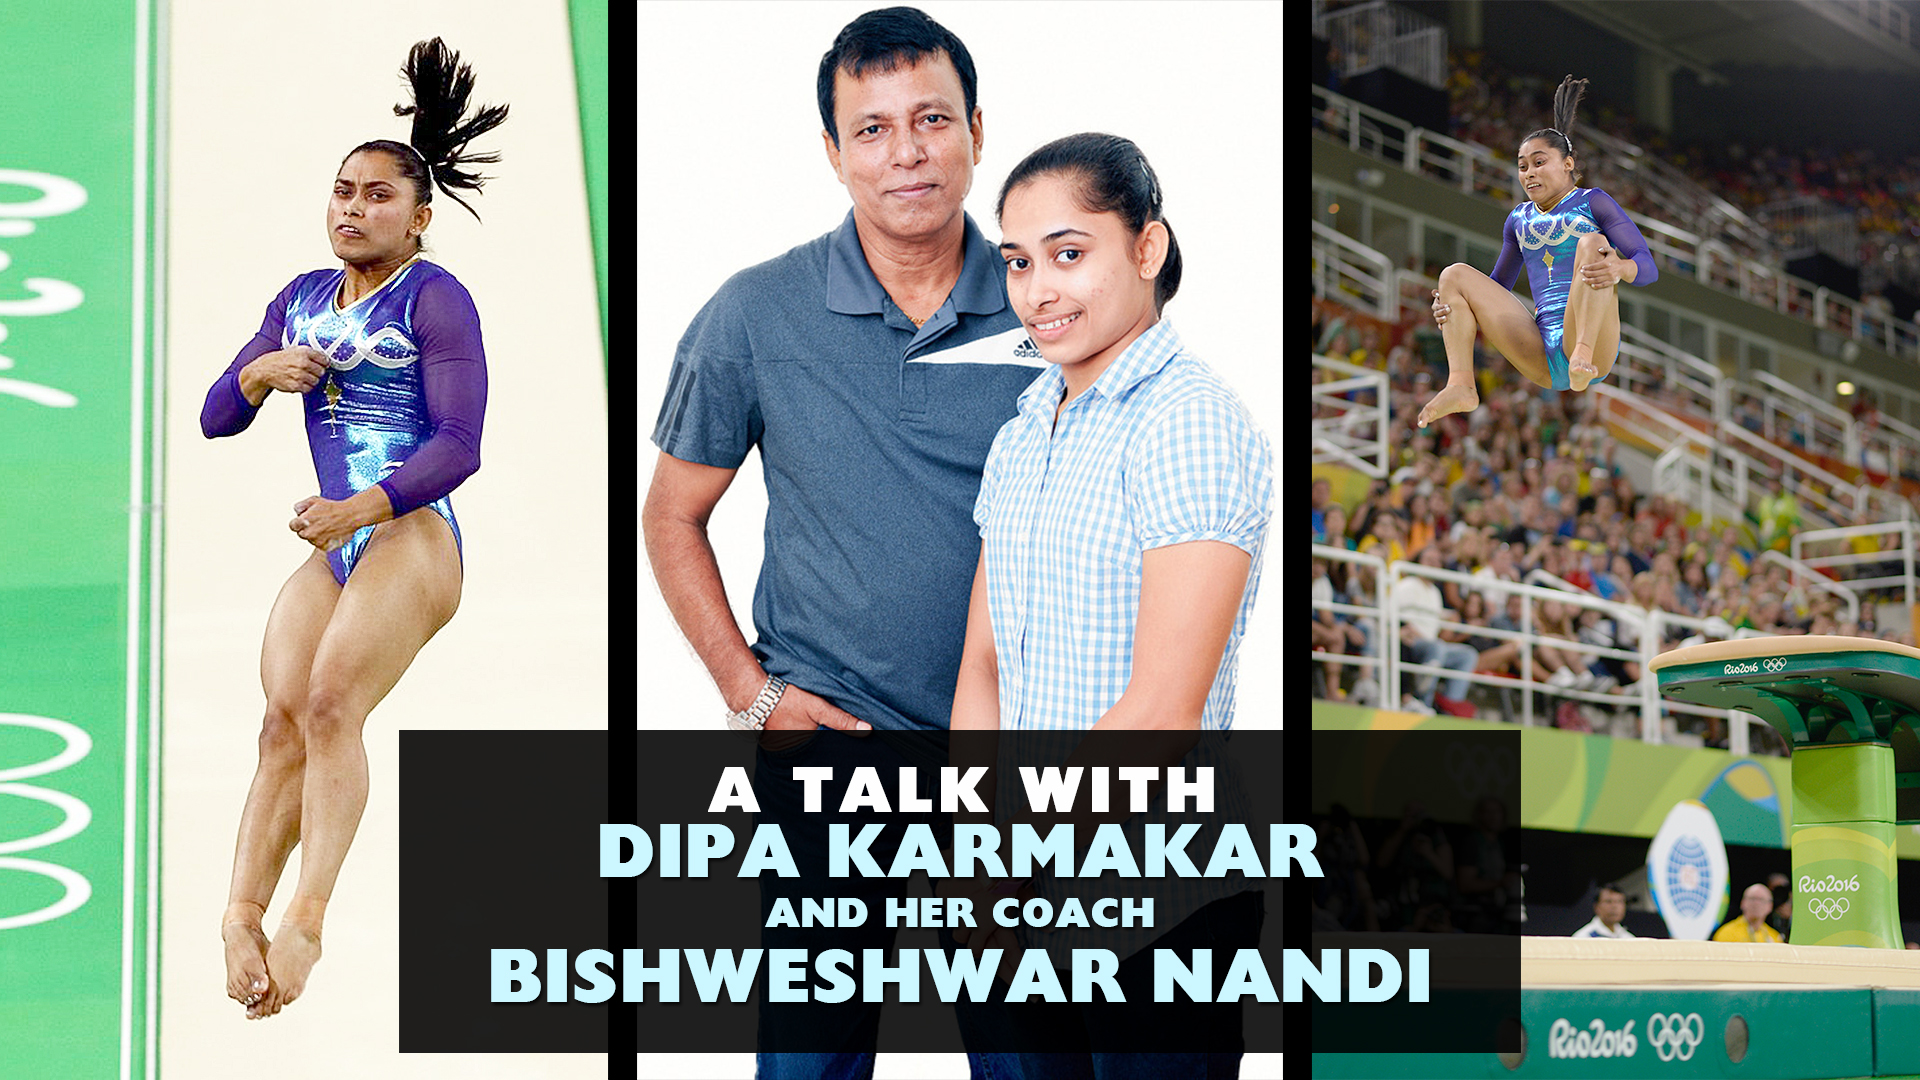 A Talk with Dipa Karmakar and her coach Bishweshwar Nandi